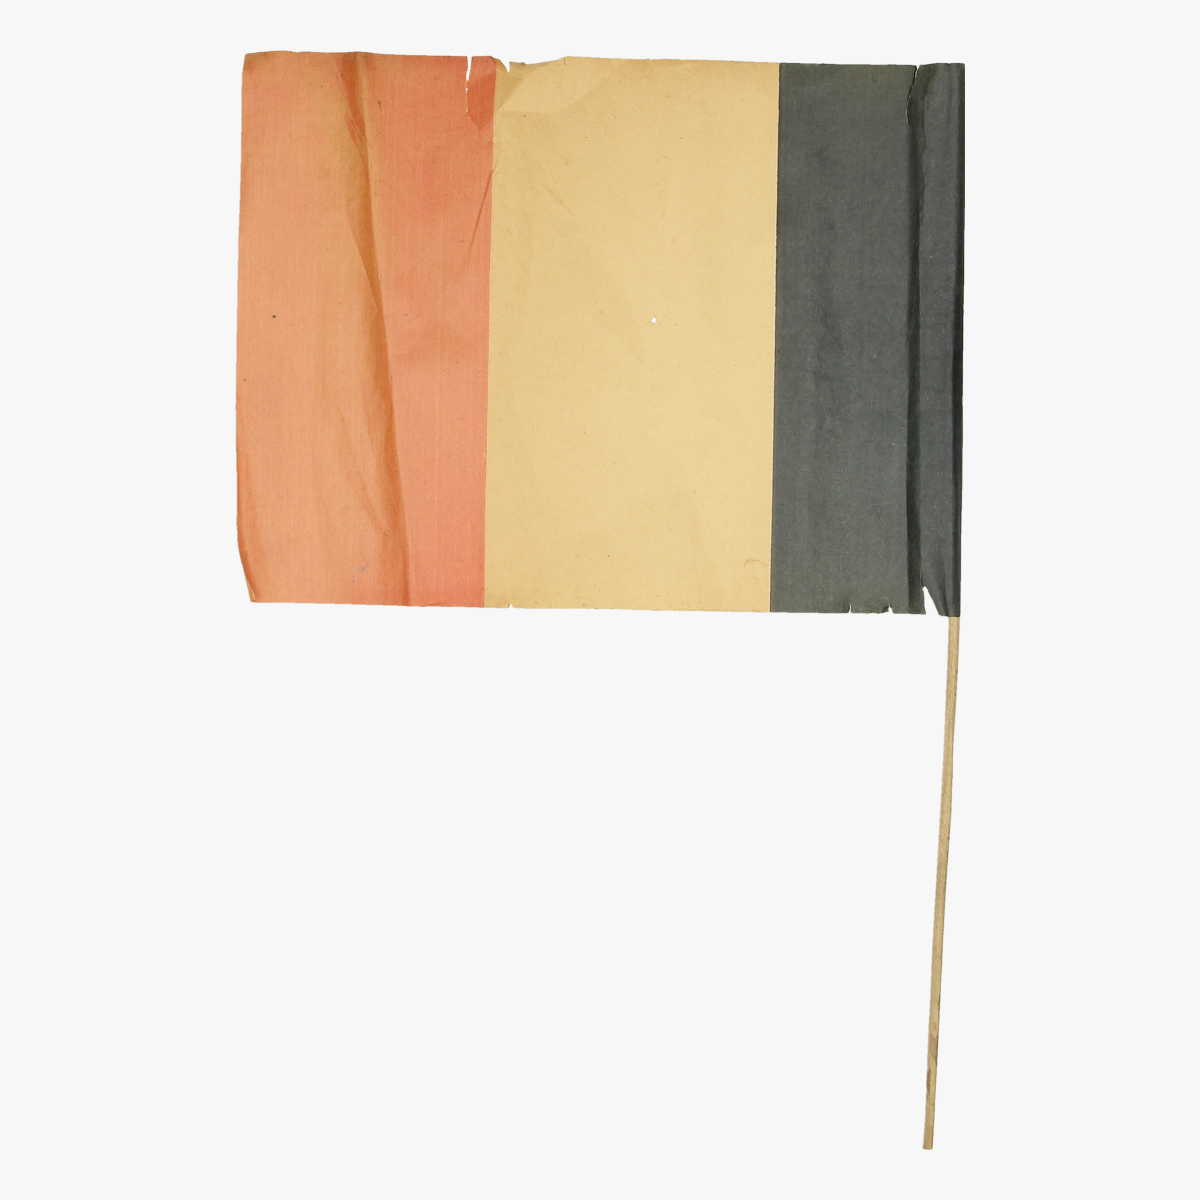 Afbeeldingen van expo 58 papieren belgische vlag